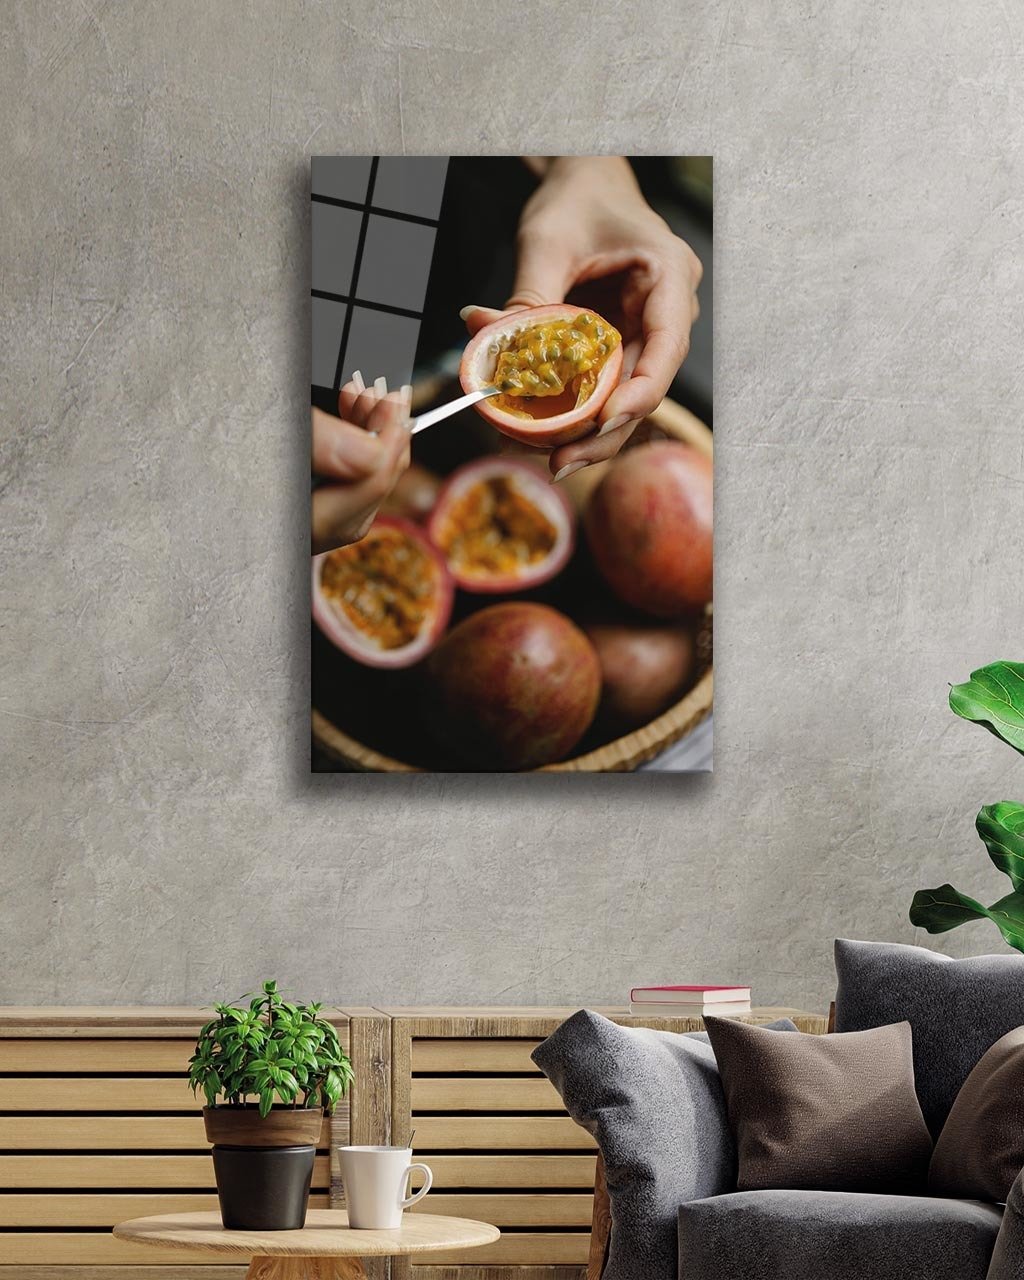 Meyve Cam Tablo  4mm Dayanıklı Temperli Cam, Fruits Wall Art